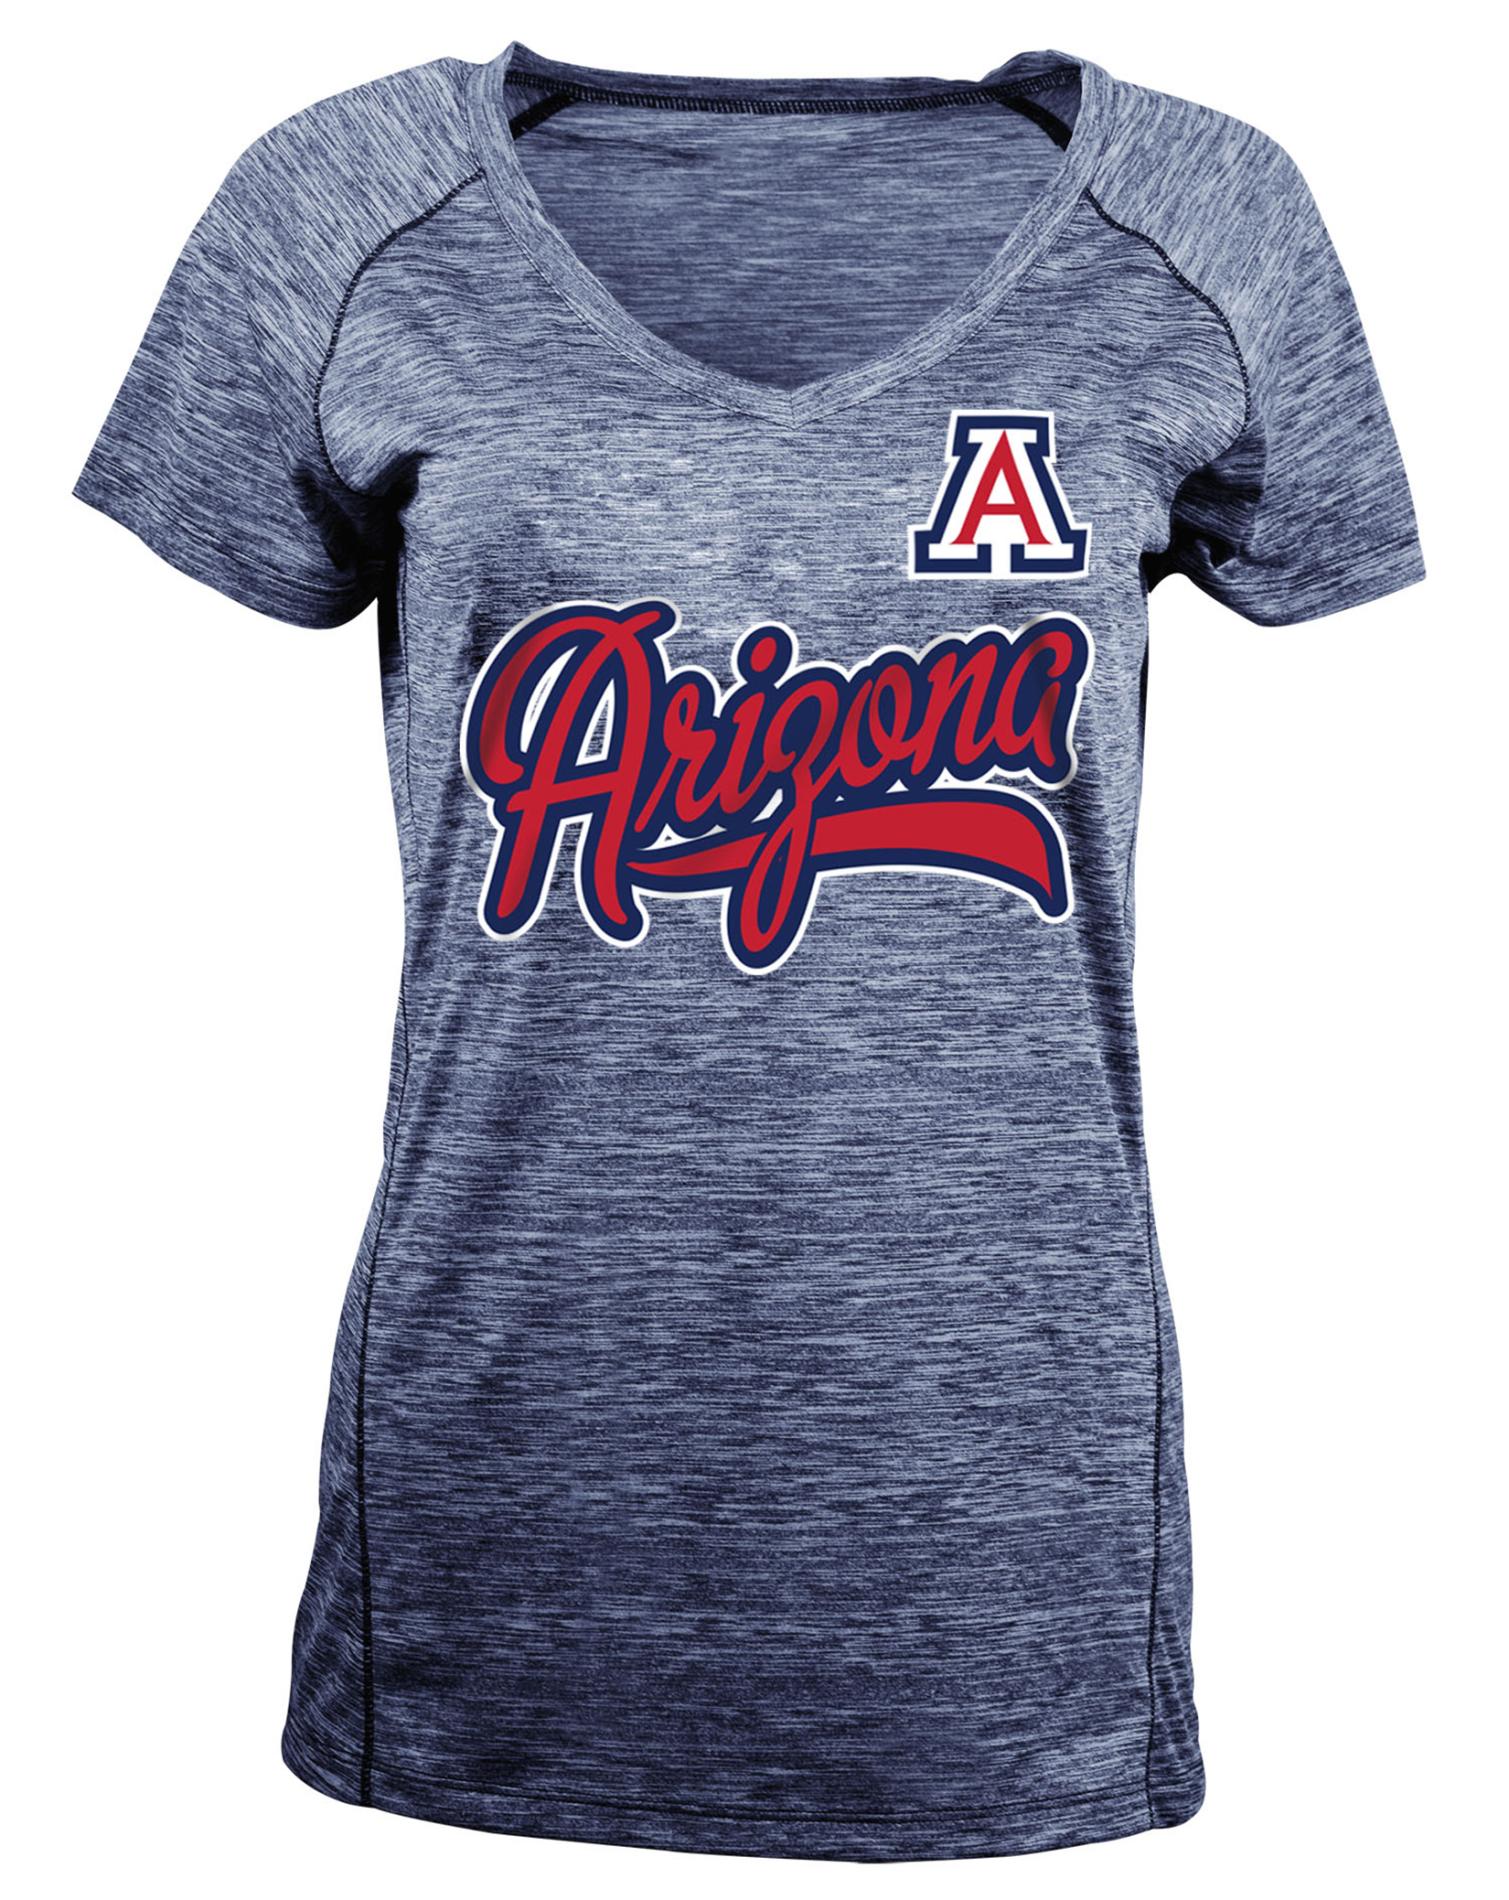 NCAA Women's Performance Shirt - University of Arizona Wildcats